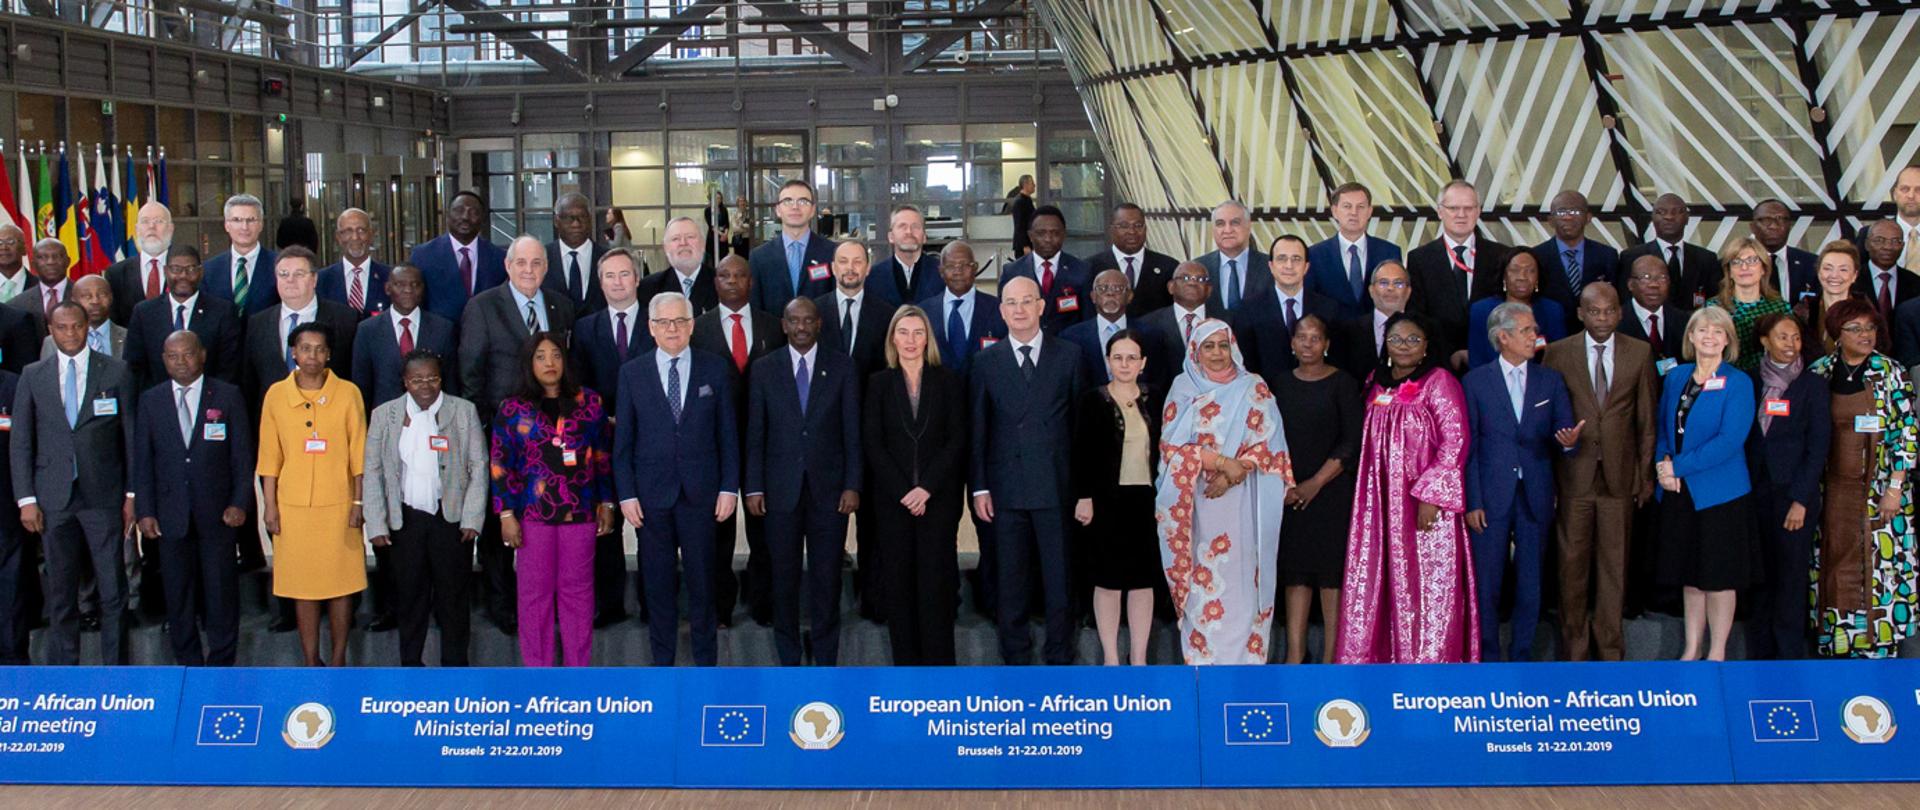 Udział ministra Czaputowicza w Spotkaniu Ministerialnym Unia Europejska – Unia Afrykańska